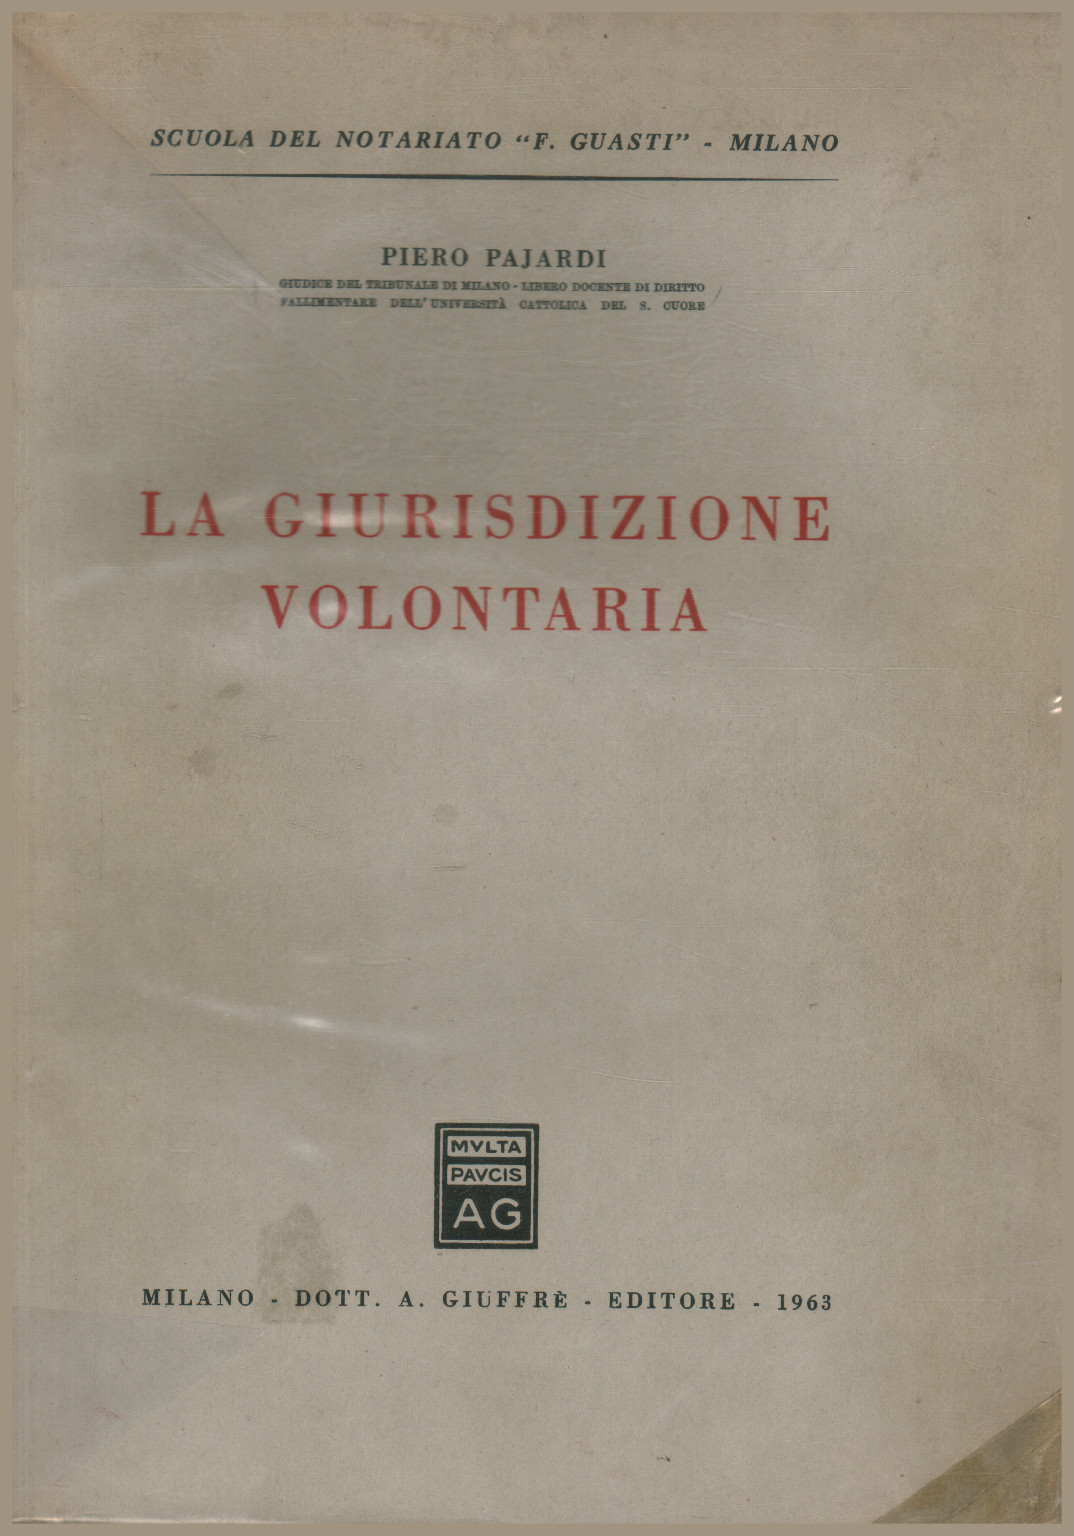 La giurisdizione volontaria, Piero Pajardi